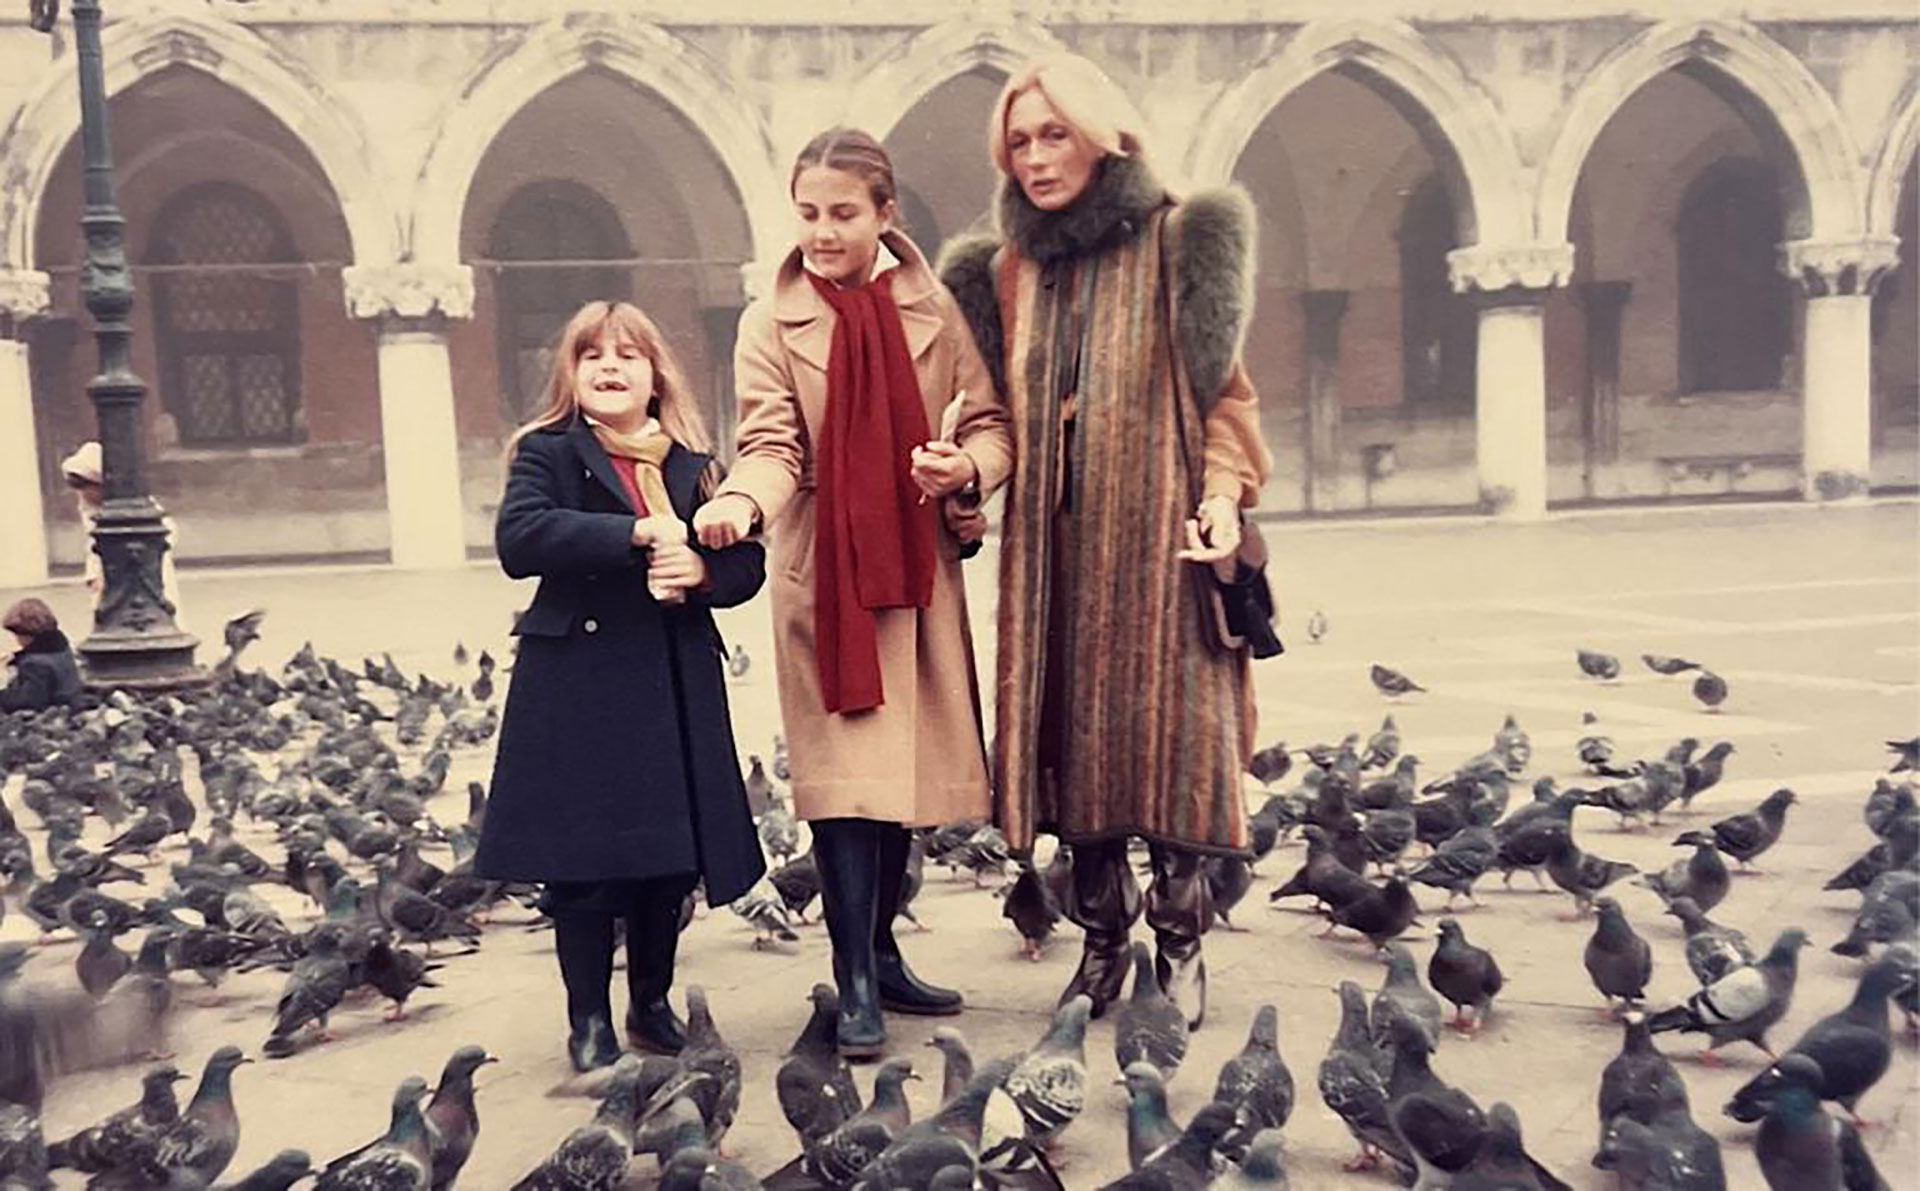 Mariana, Cora y Mimicha le dan de comer a las palomas en Venecia (Crédito: Cora Reutemann)